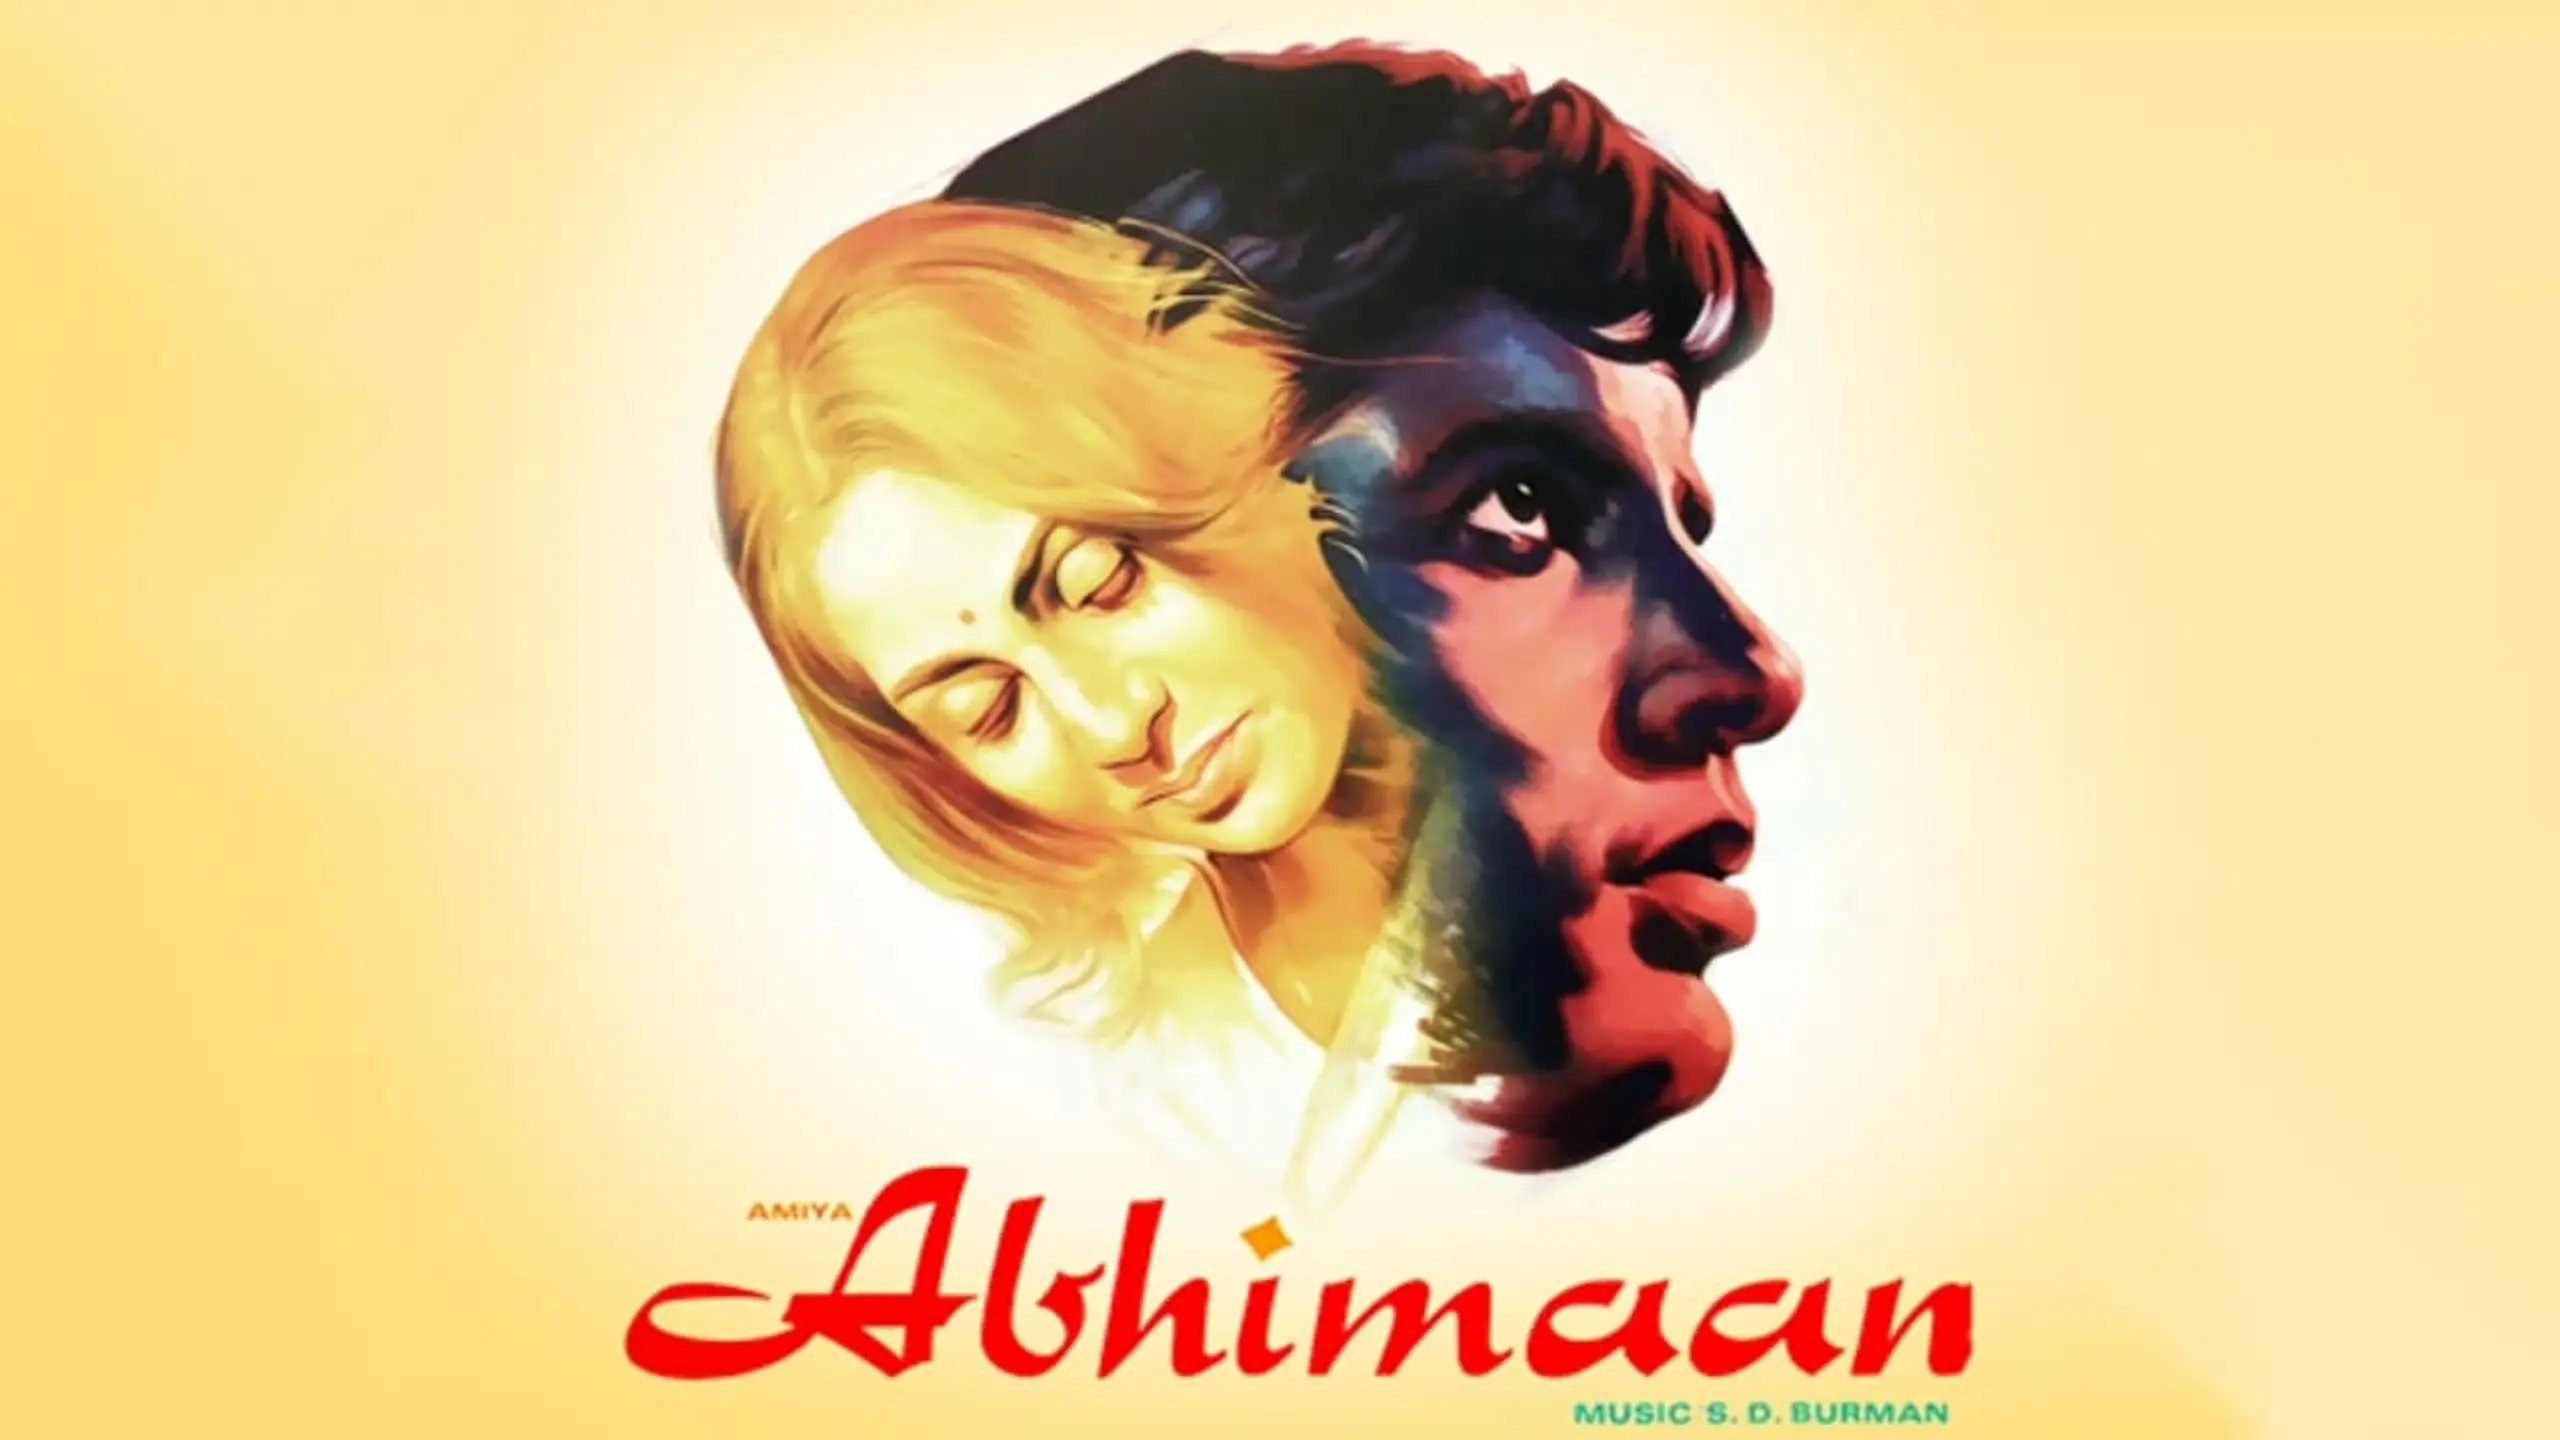 Abhimaan